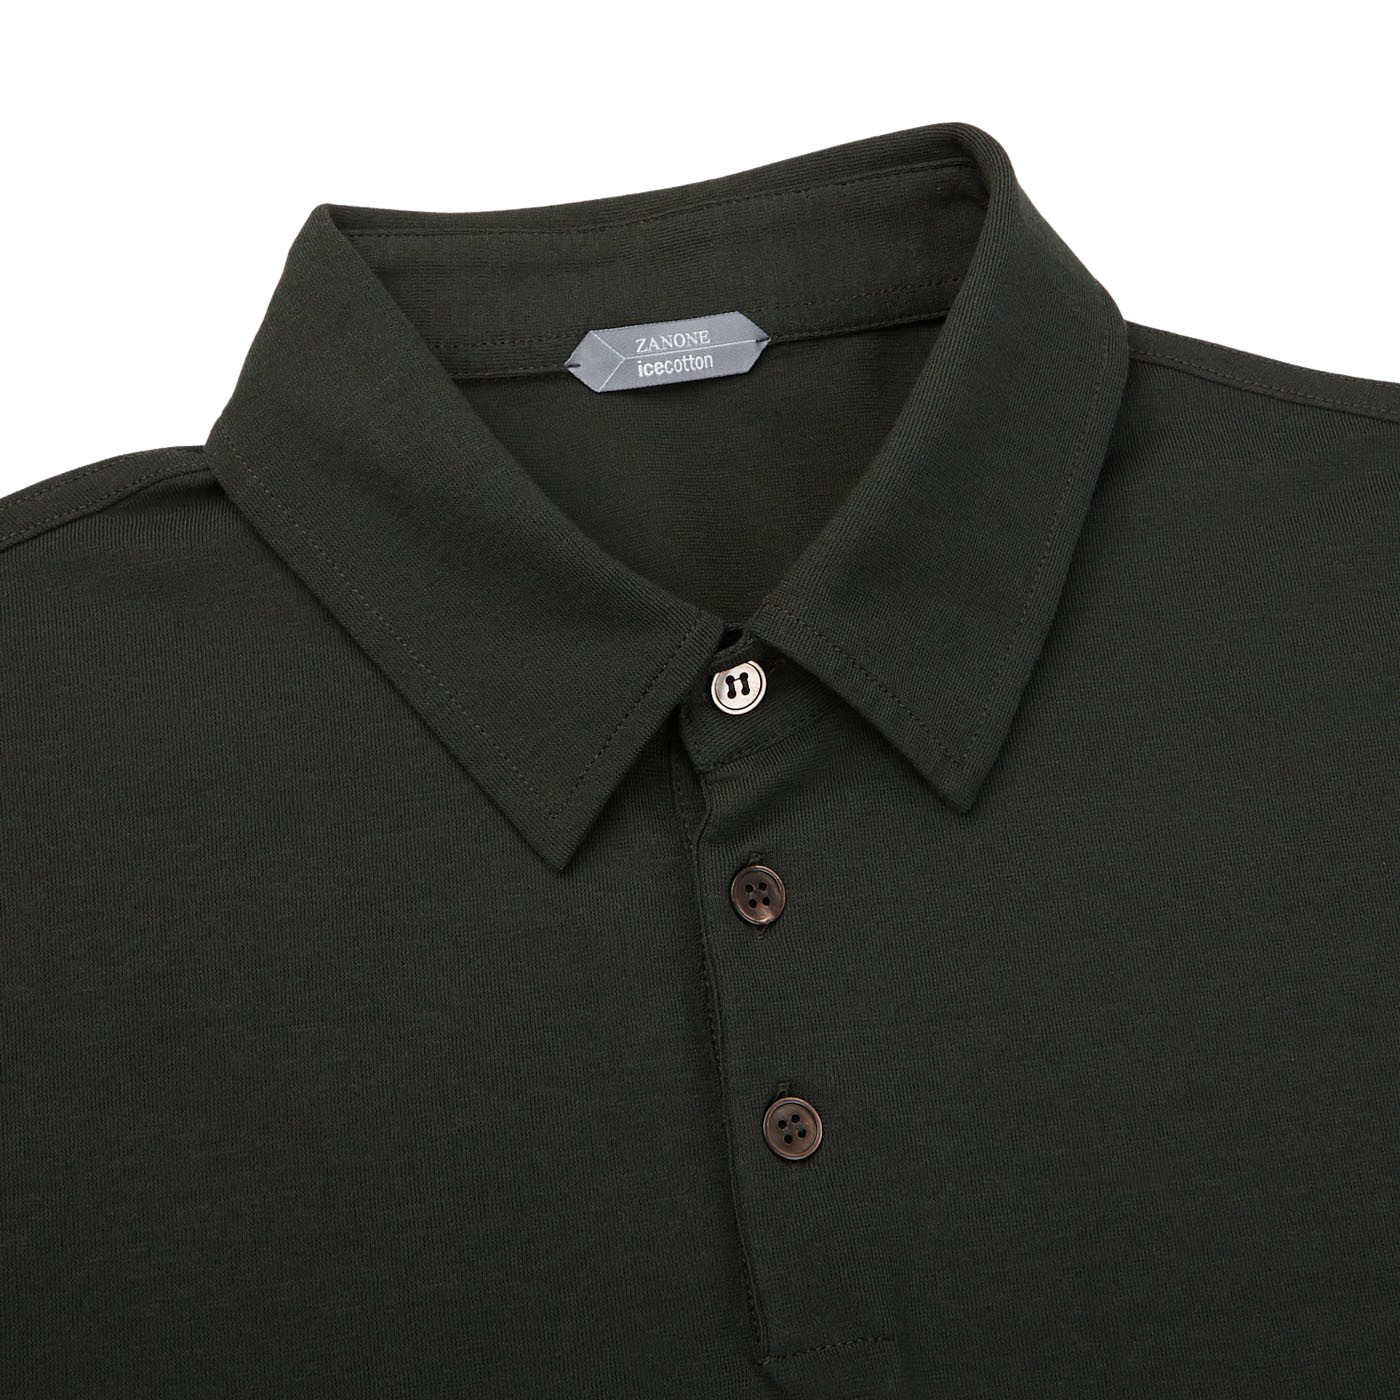 Zanone - Moss Green Ice Cotton Polo Shirt | Baltzar